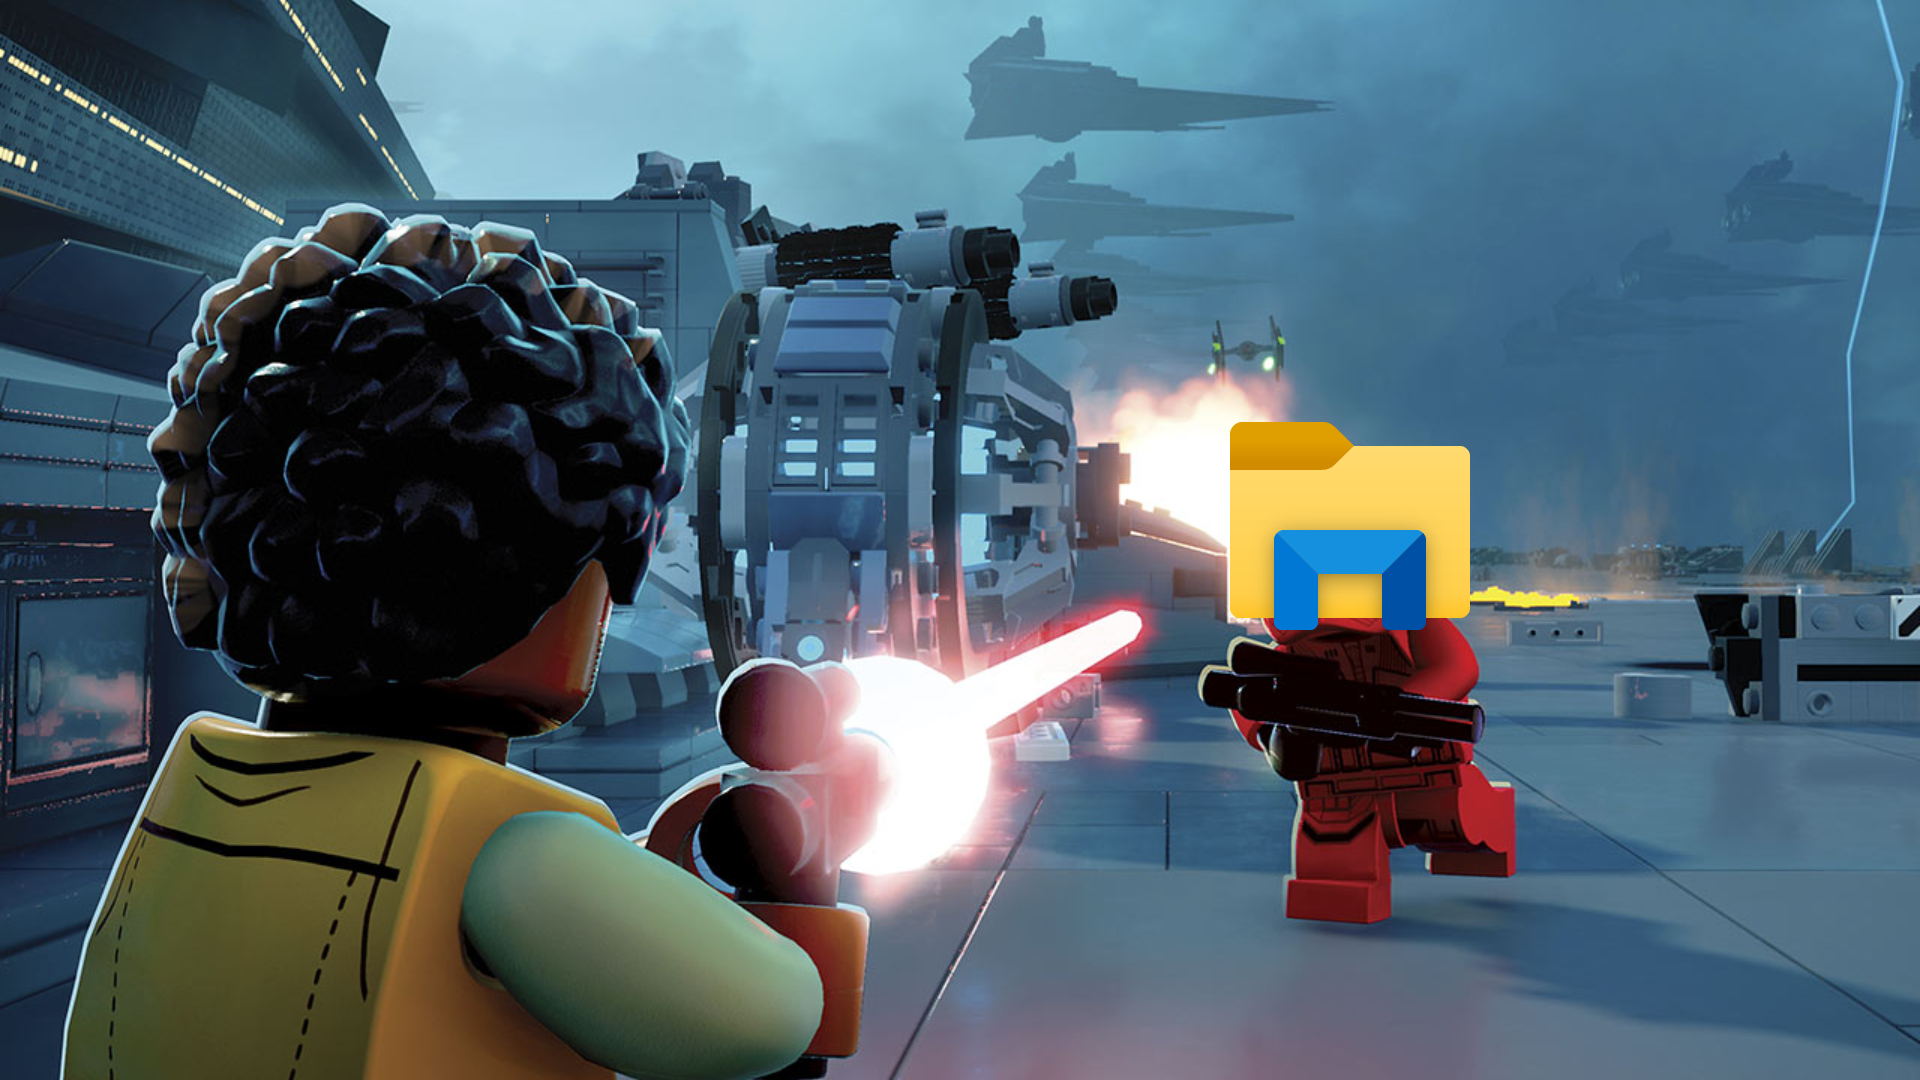 Lego Star Wars Skywalker Saga size: trim your install by 8GB